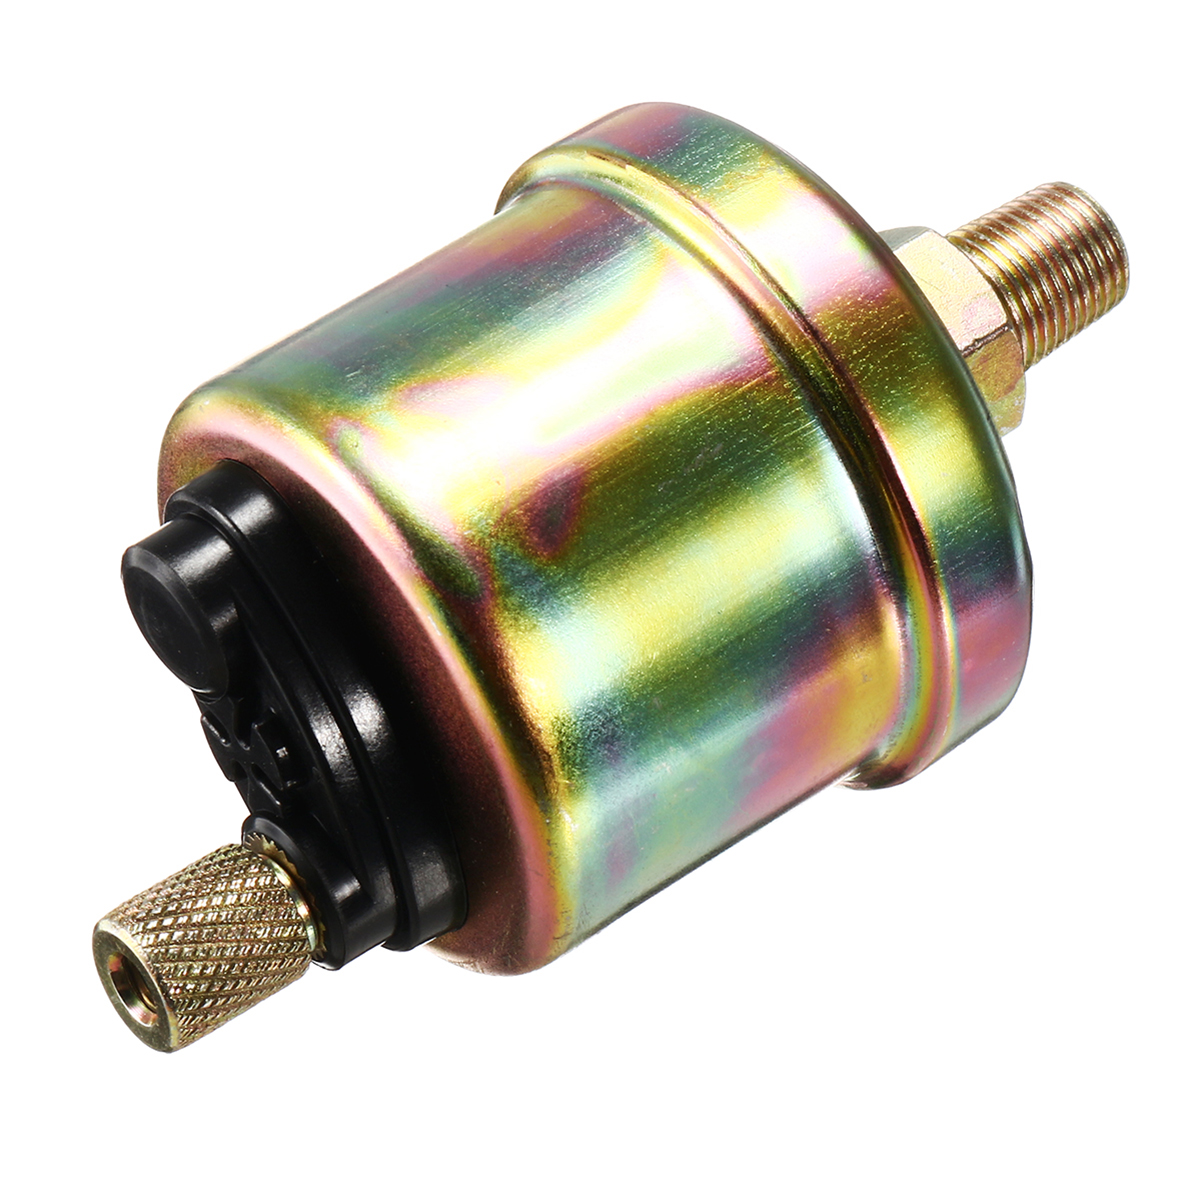 

Engine Oil Pressure Sensor Gauge Sender Switch 1/8NPT For Digital Press Gauge